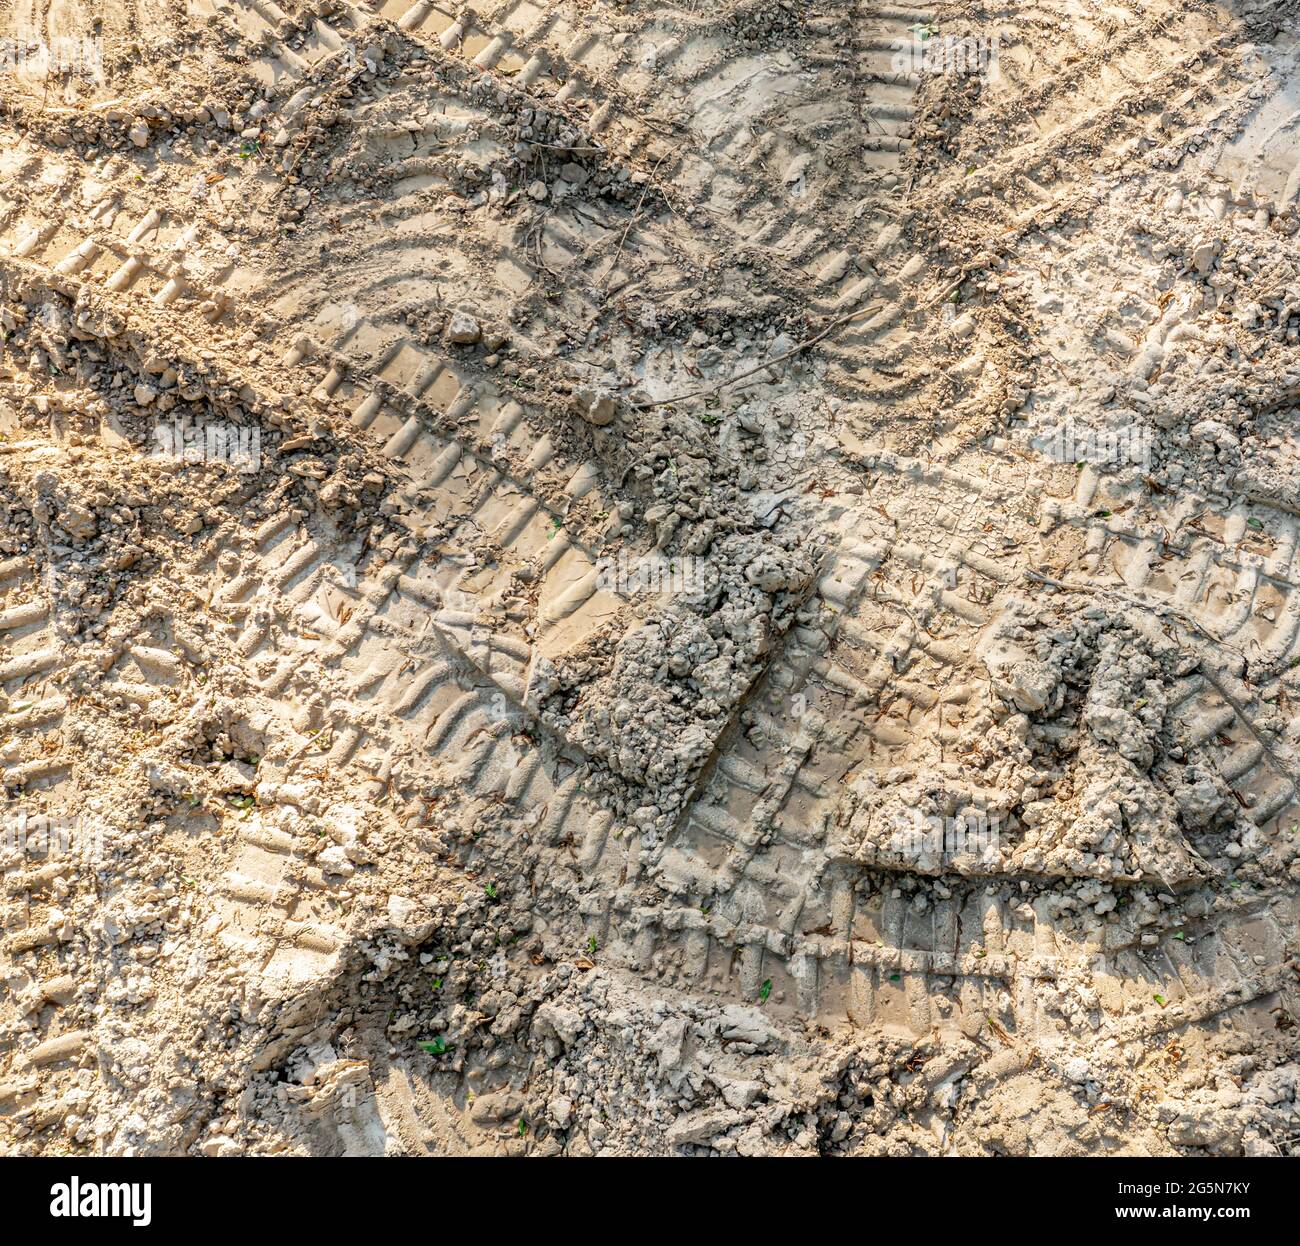 Vue aérienne des chenilles de bulldozer dans la terre Banque D'Images